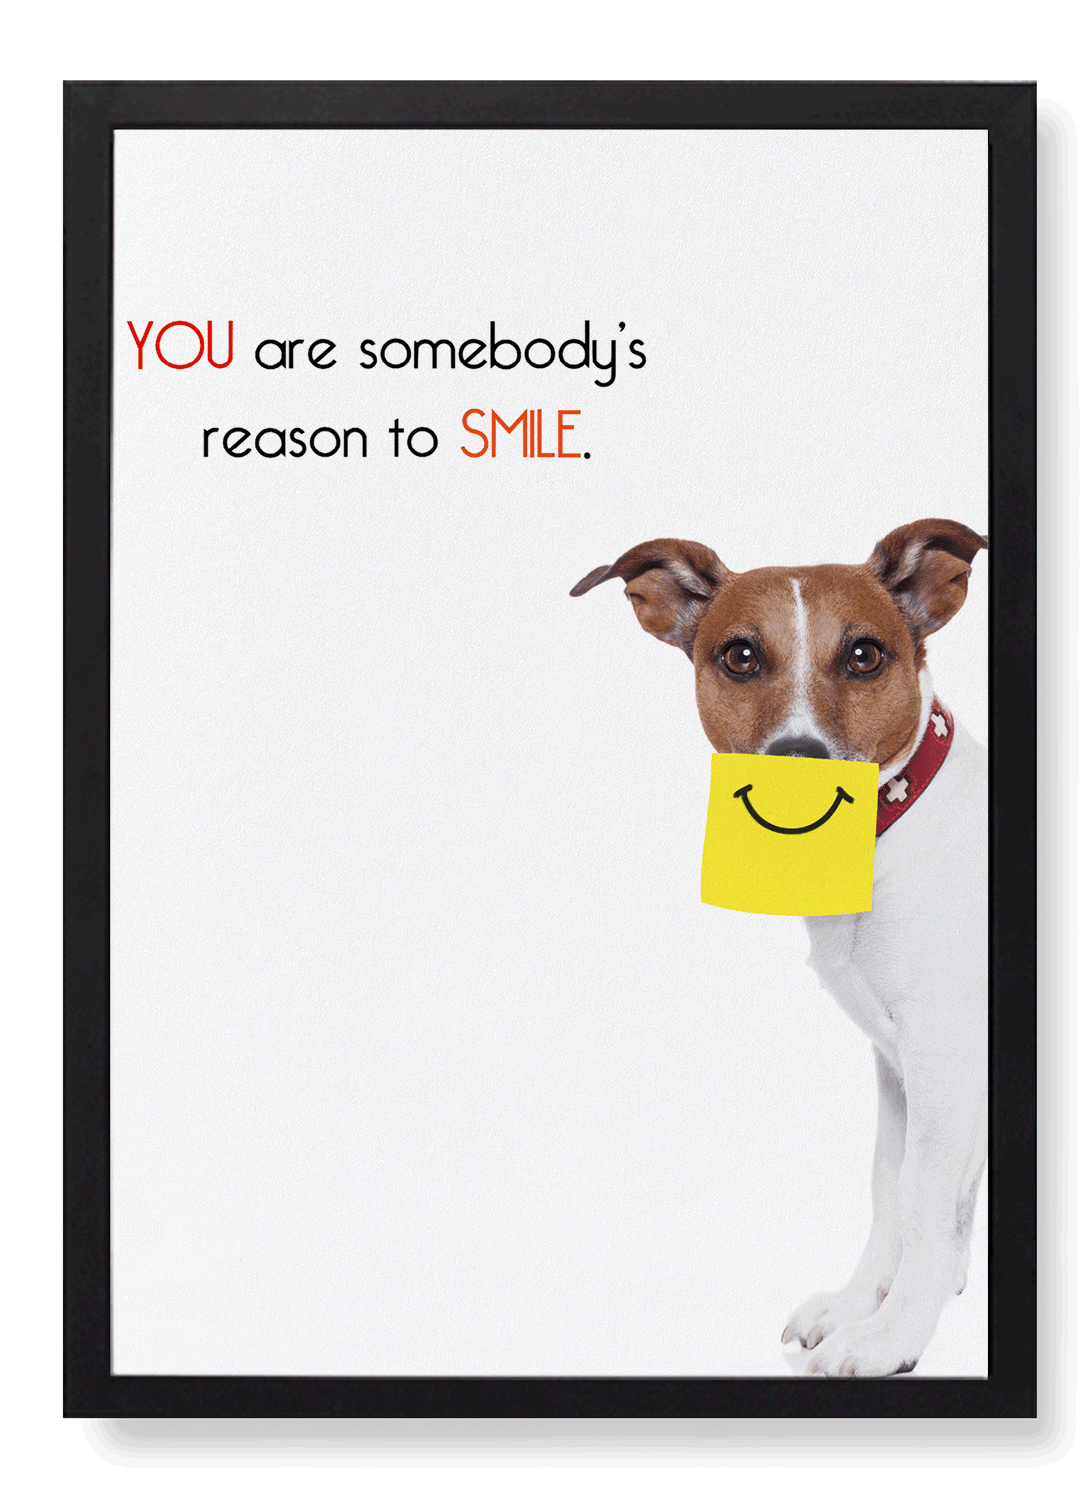 SOMEBODY'S REASON TO SMILE